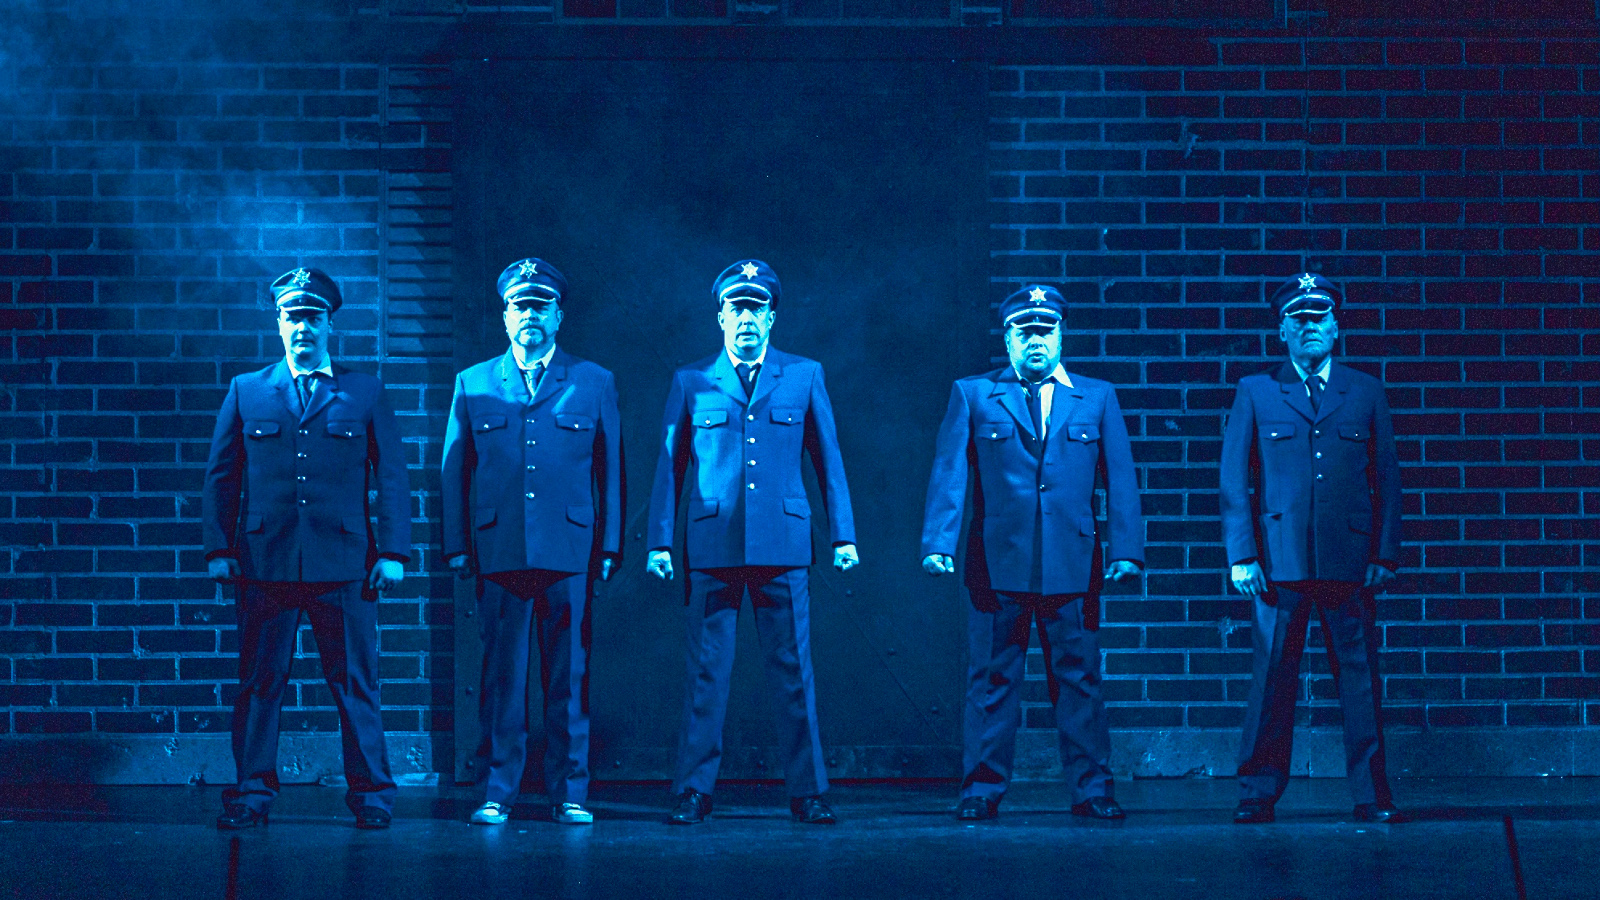 Kuvassa on viisi miestä sinisissä virkapuvuissa ja koppalakeissa.  Taustalla on tiiliseinää.  Kuvan sävy on sinertävä.